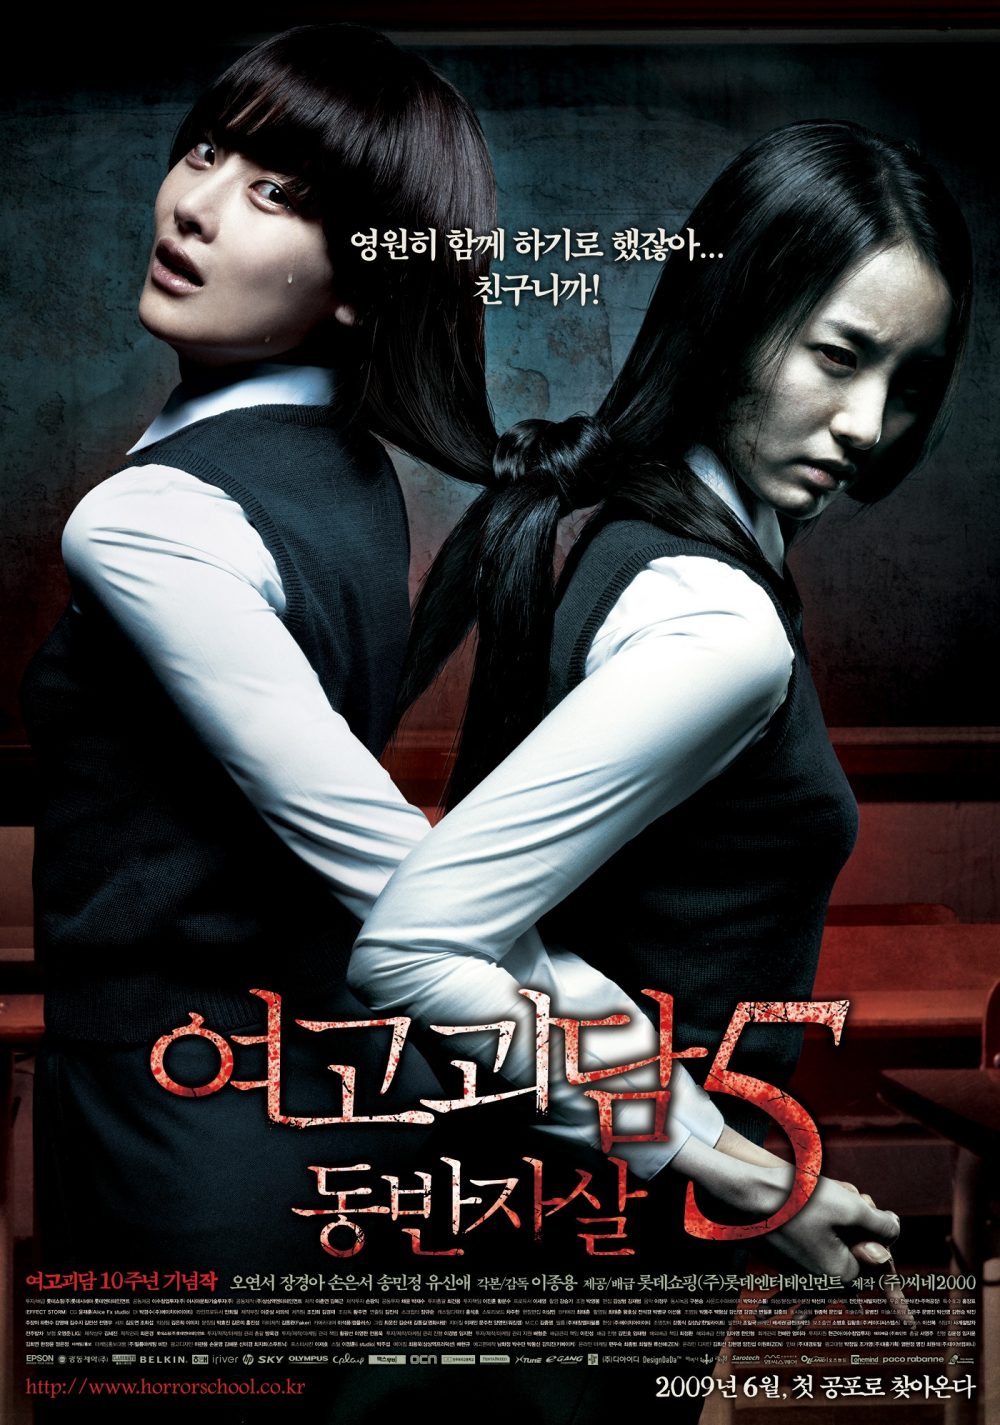 Phim quái kinh dị Nước Hàn hoặc nhất từng thời đại: Hành thầy thuốc thì thì thầm - Whispering Corridors (1998)